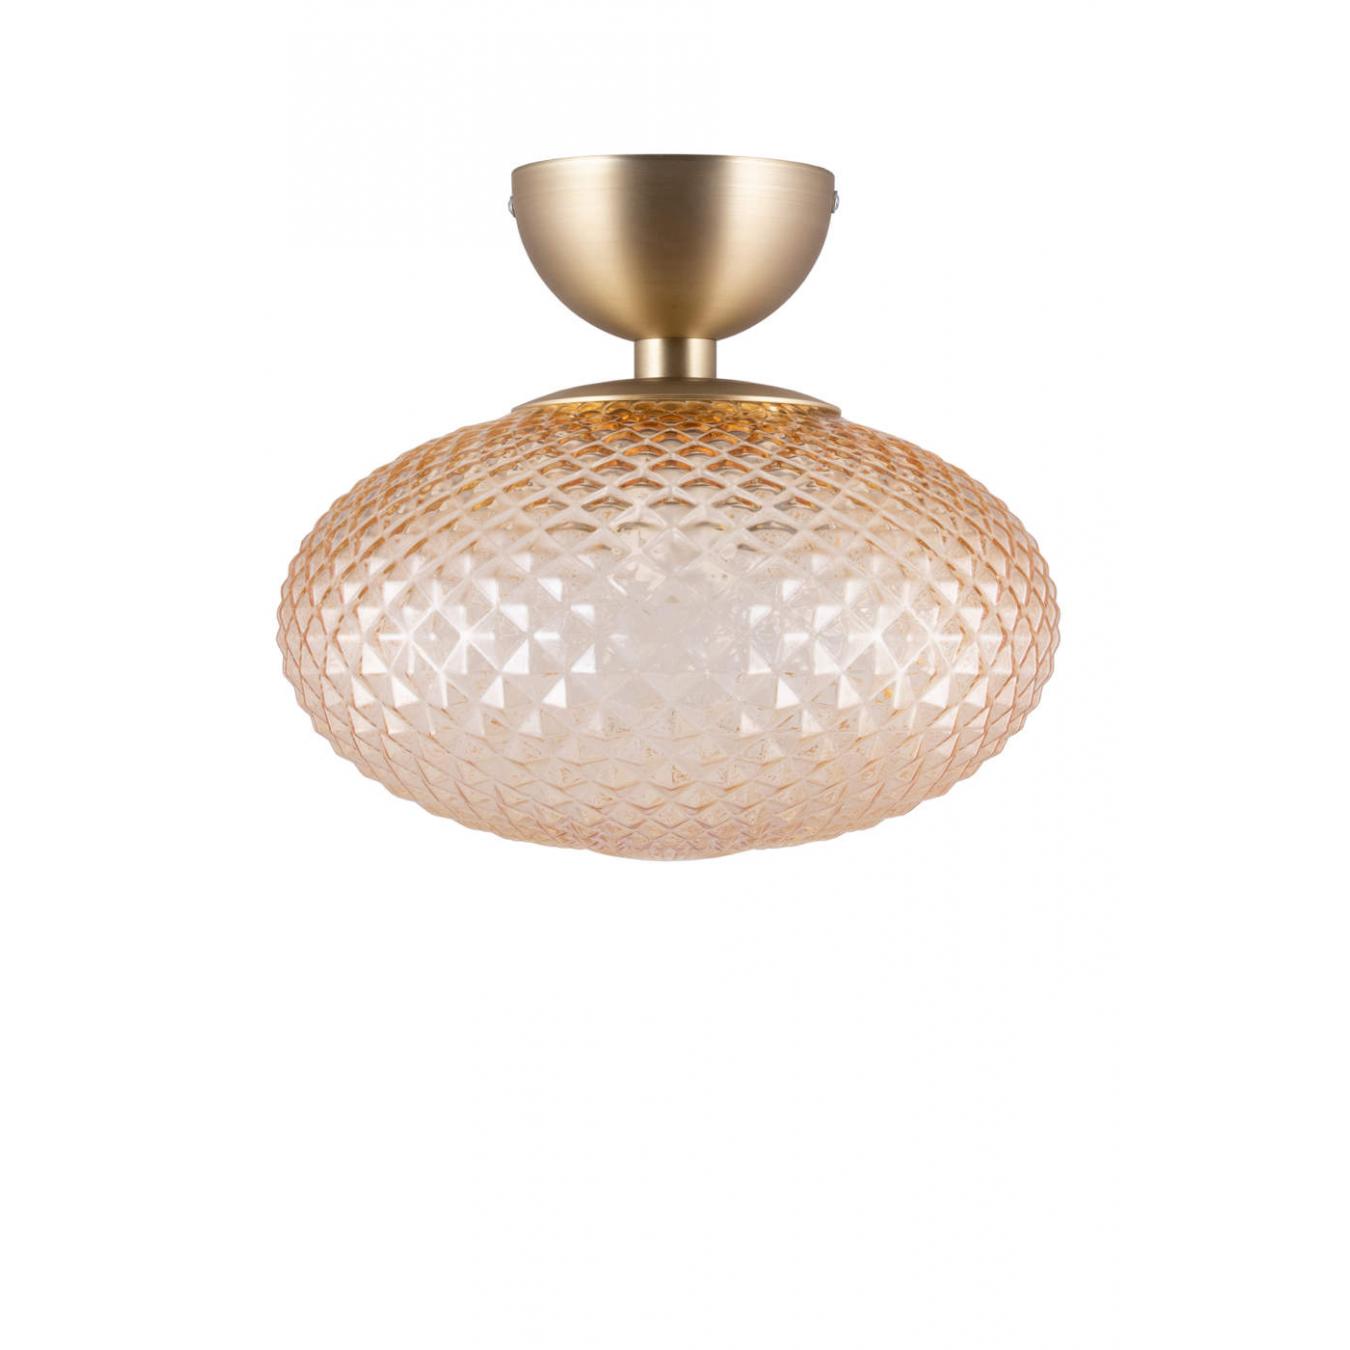 Globen Lighting Jackson ceiling amber // Jackson mennyezeti lámpa borostyán